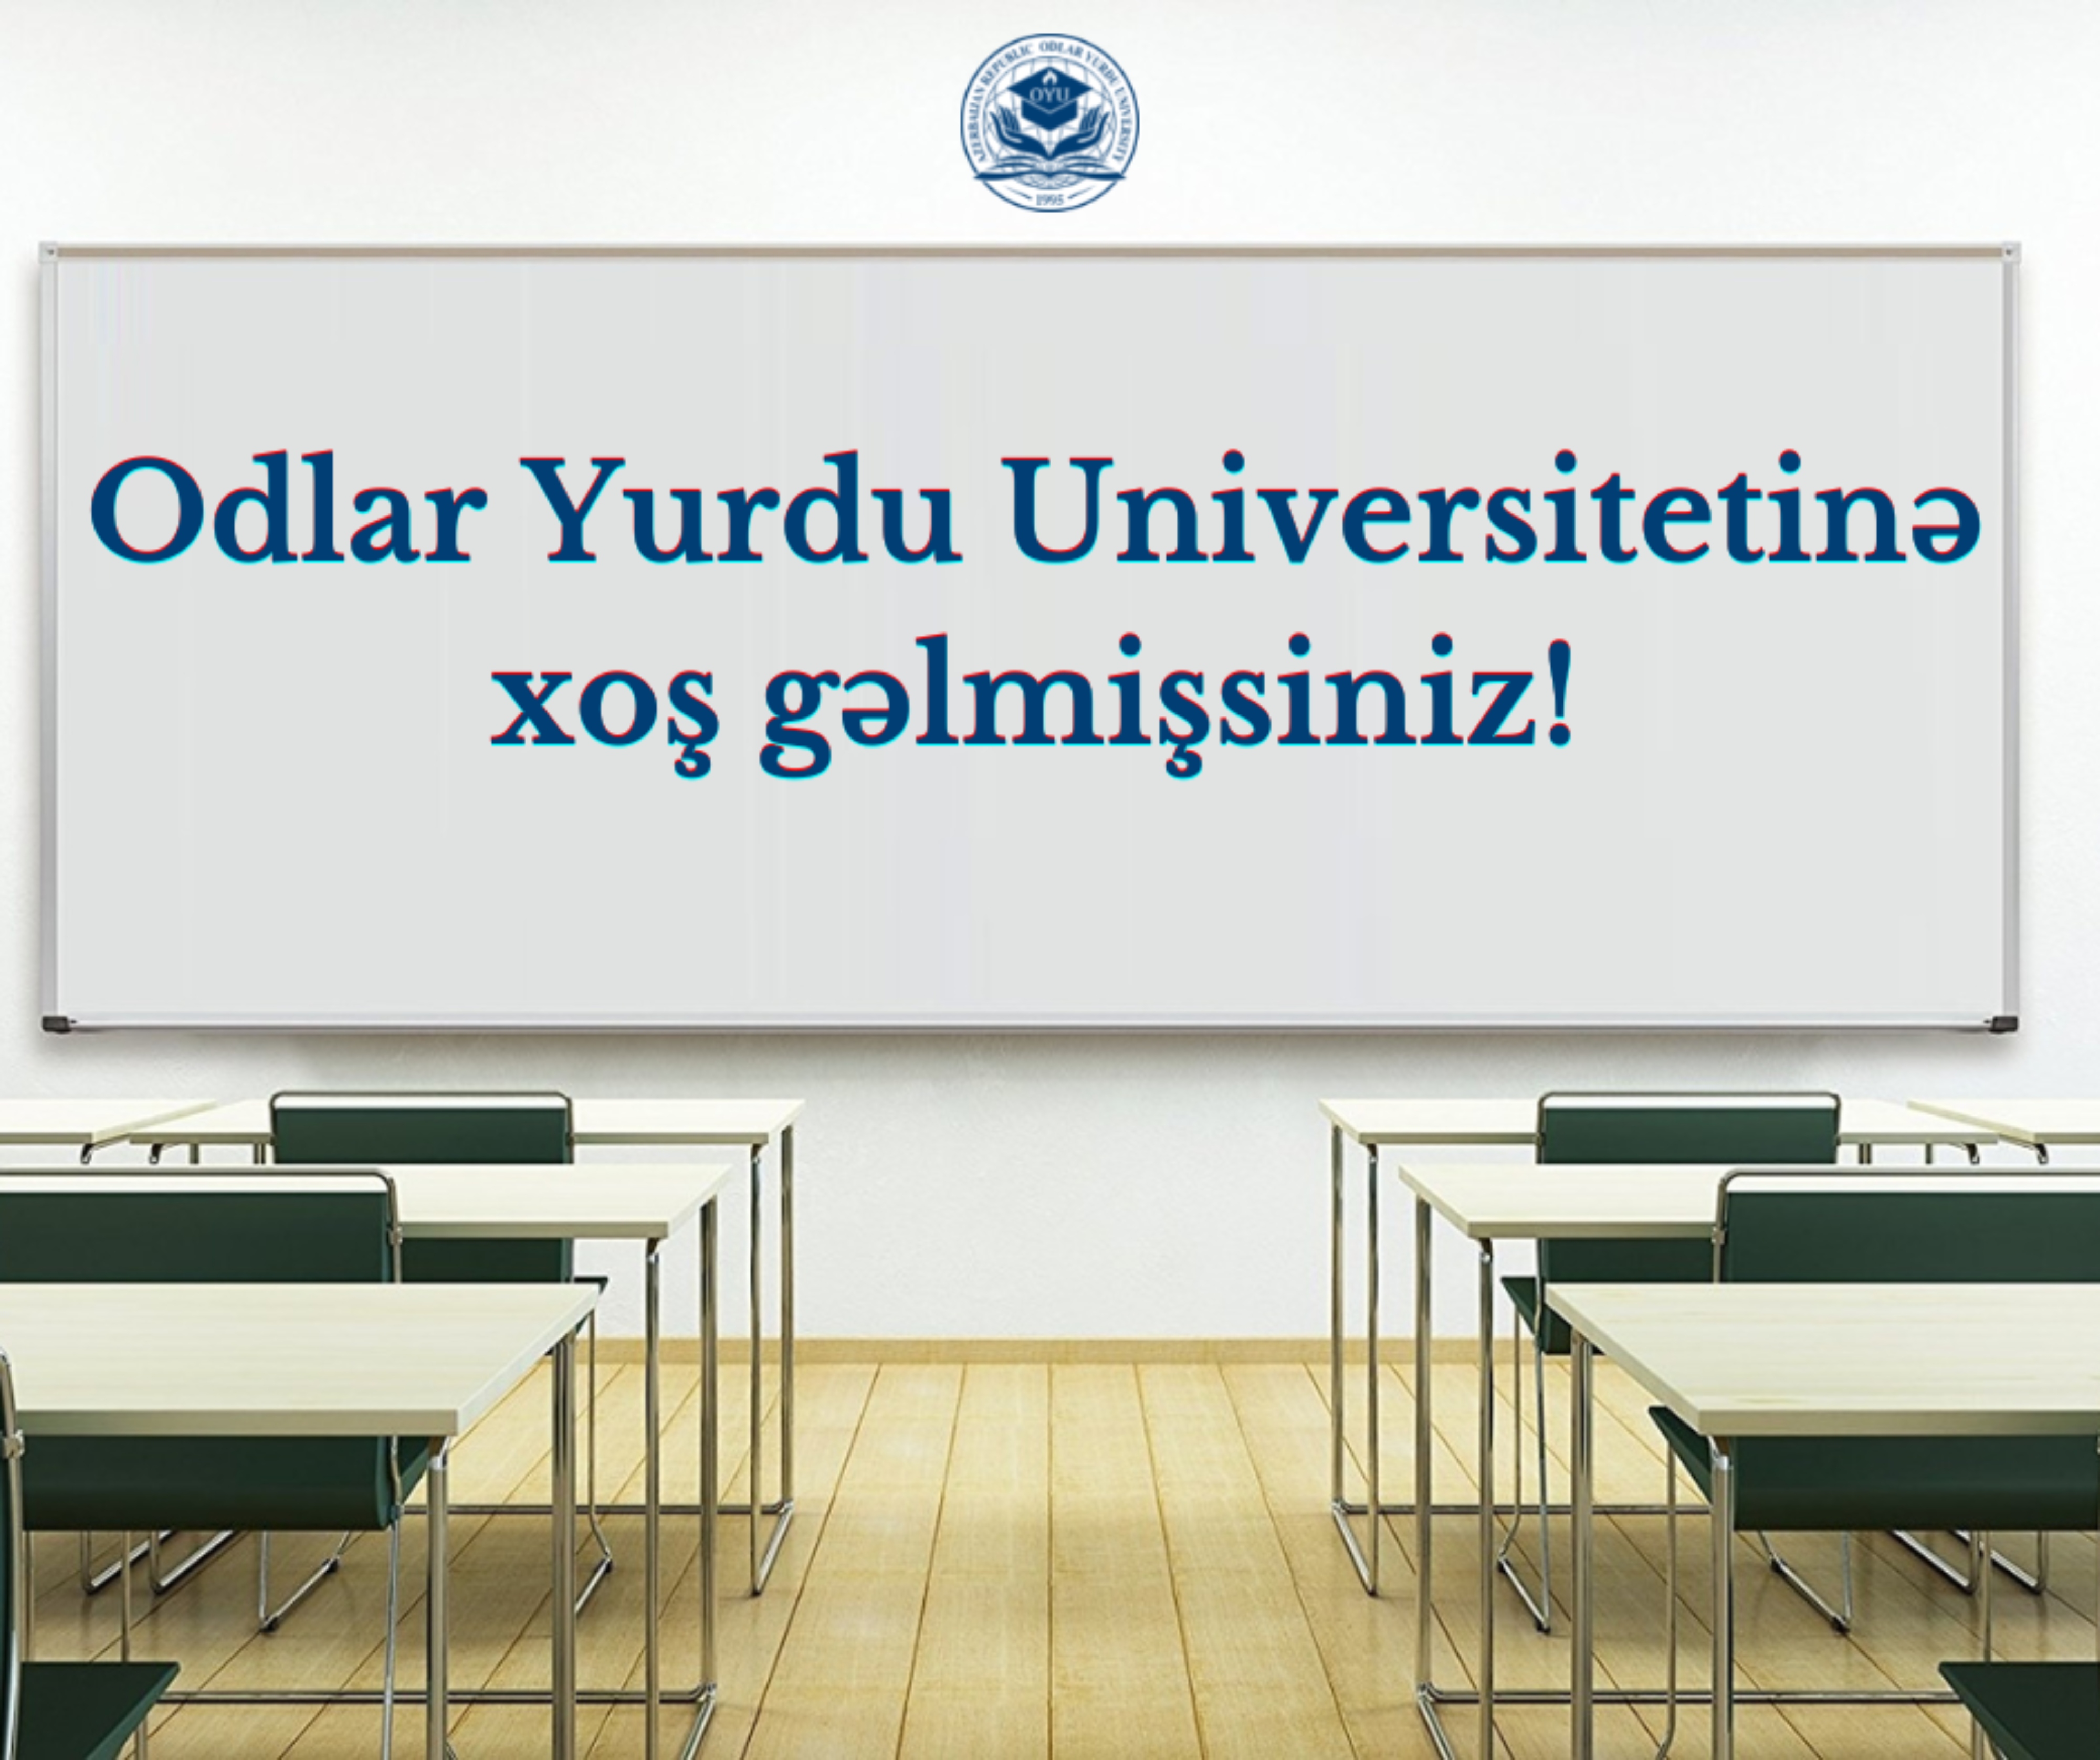 Odlar Yurdu Universitetində ilk tədris günü